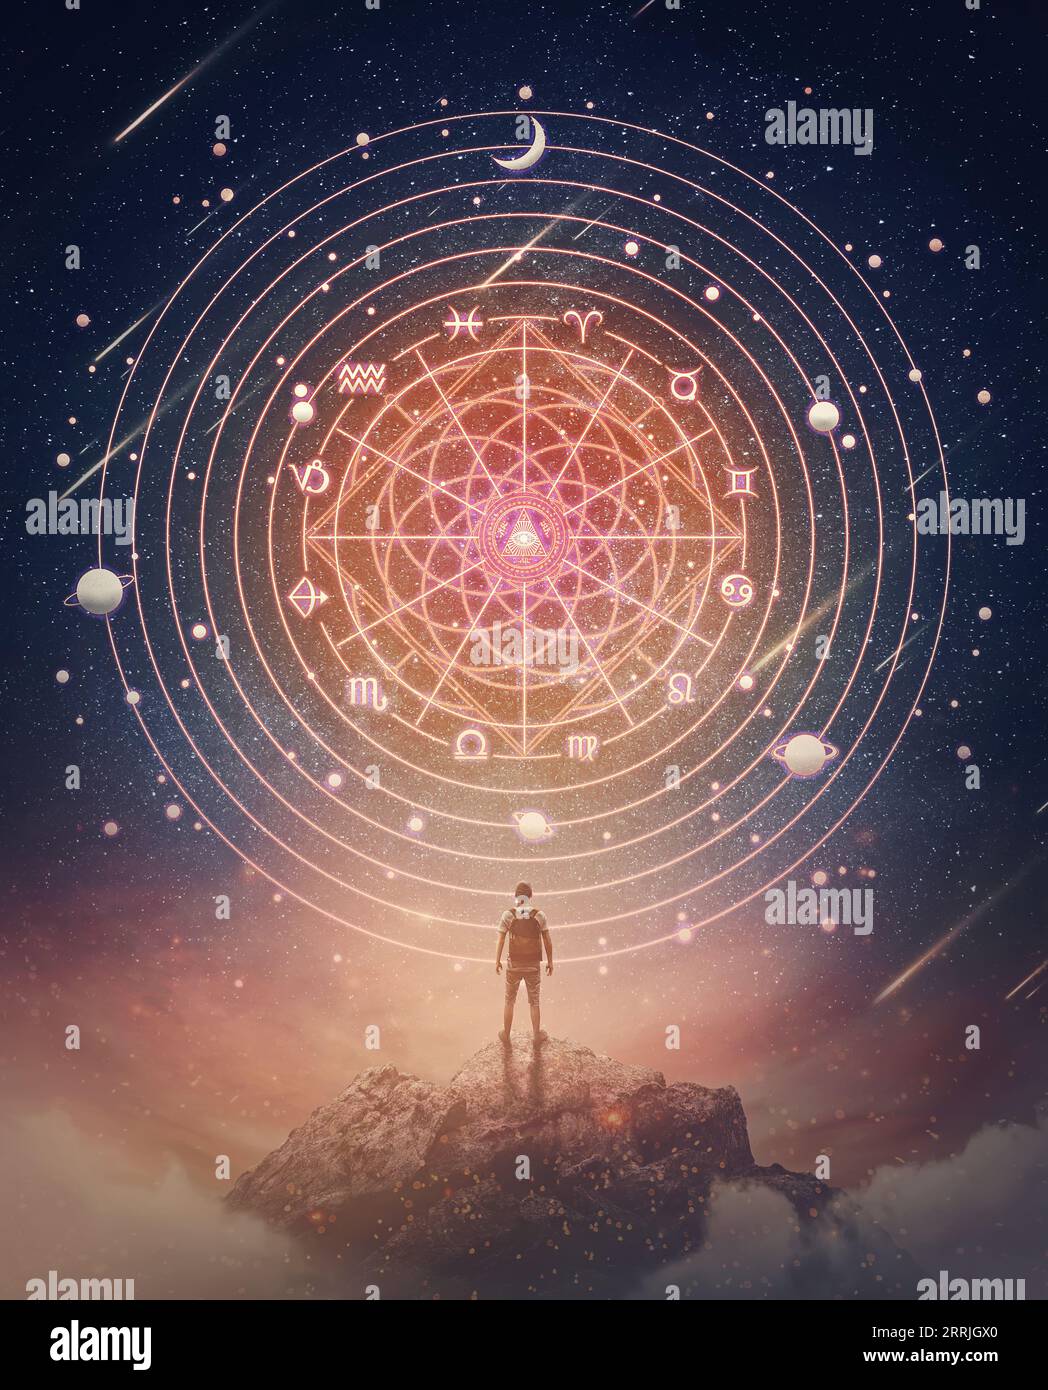 Scène merveilleuse avec une personne au sommet d'une montagne regardant la projection de roue astrologique sur le ciel étoilé de nuit. Signes du zodiaque, horos magiques Banque D'Images